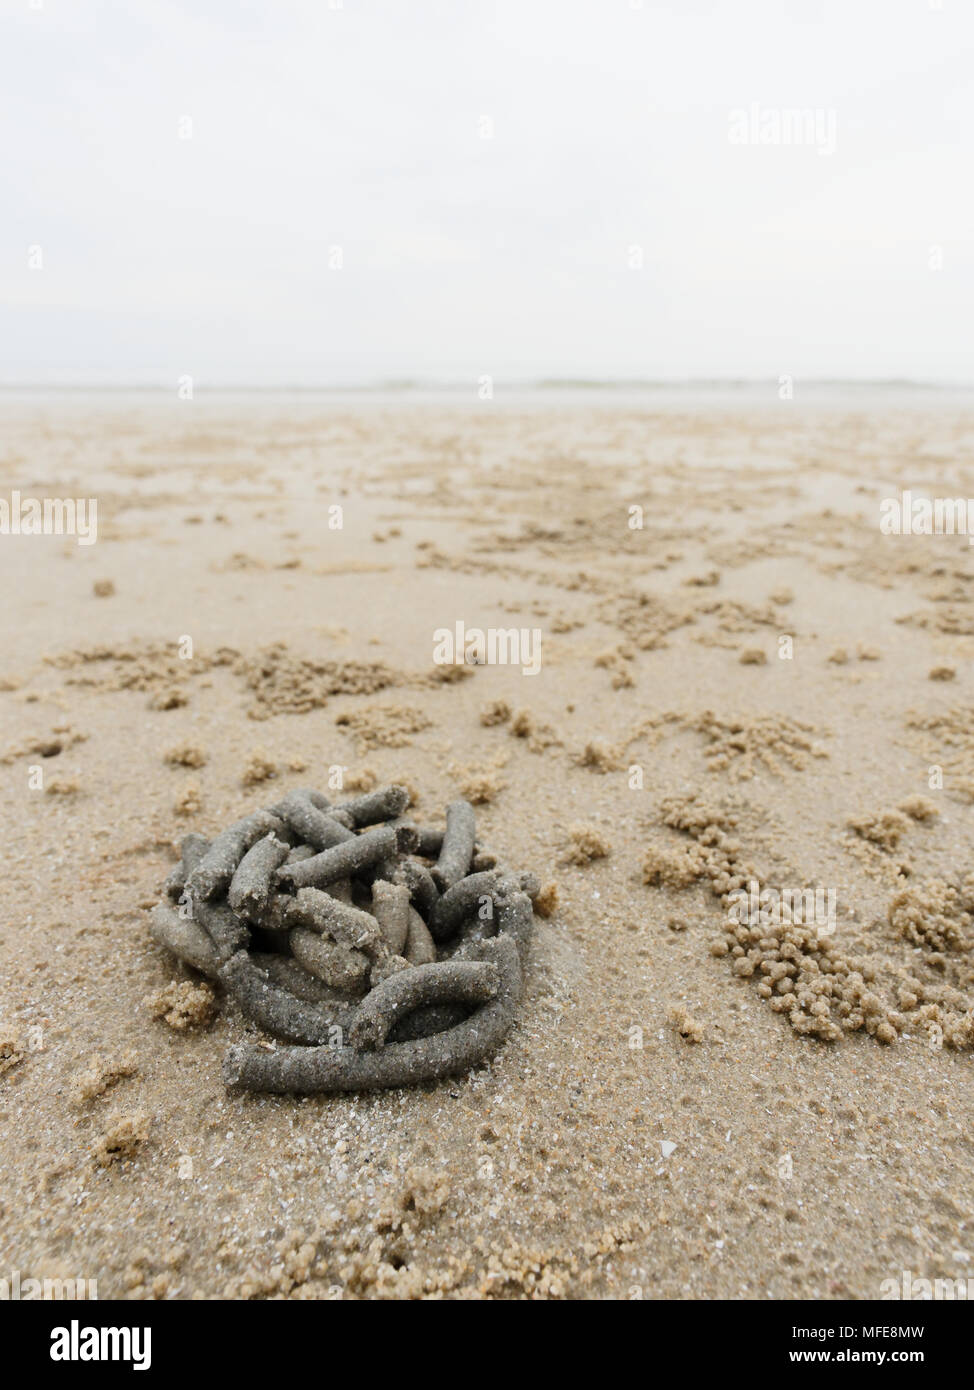 Abstrakte Form der Wirbel von Sand und Schlamm am Strand von Lug oder sand Worms mit Sediment Kugeln oder Pellet von Ghost oder Sand crab als Lebensmittel gegossen wurde mit dem Konzept der Natur Design und Kunst verdaut Stockfoto